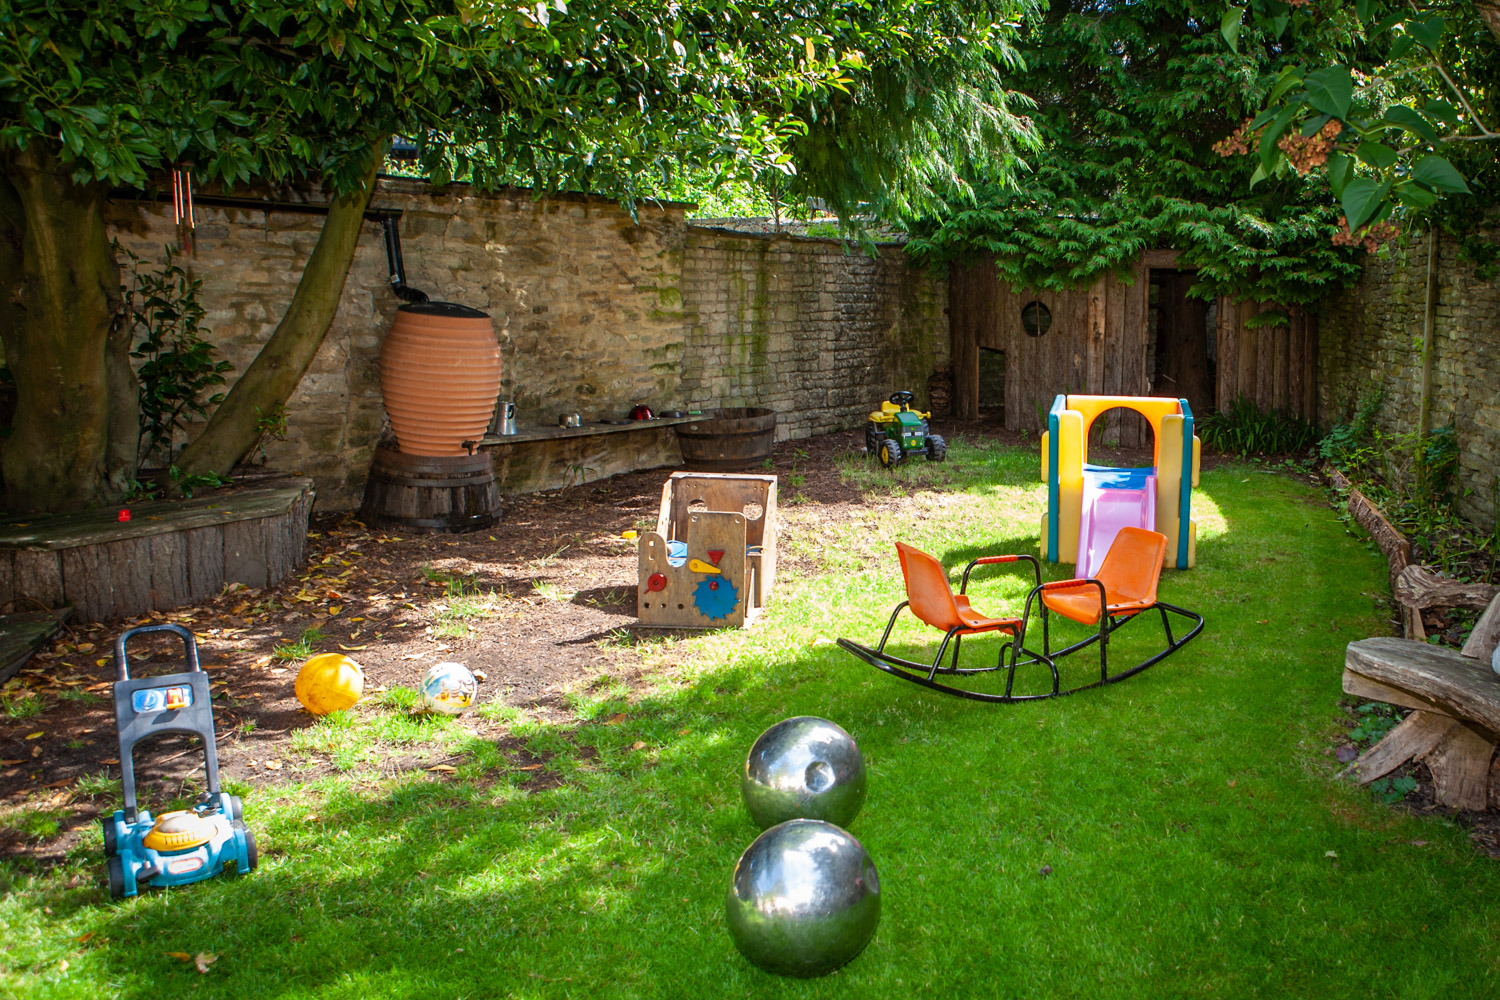 acorns-nursery-school-cirencester-babies-and-tweenies-garden-7